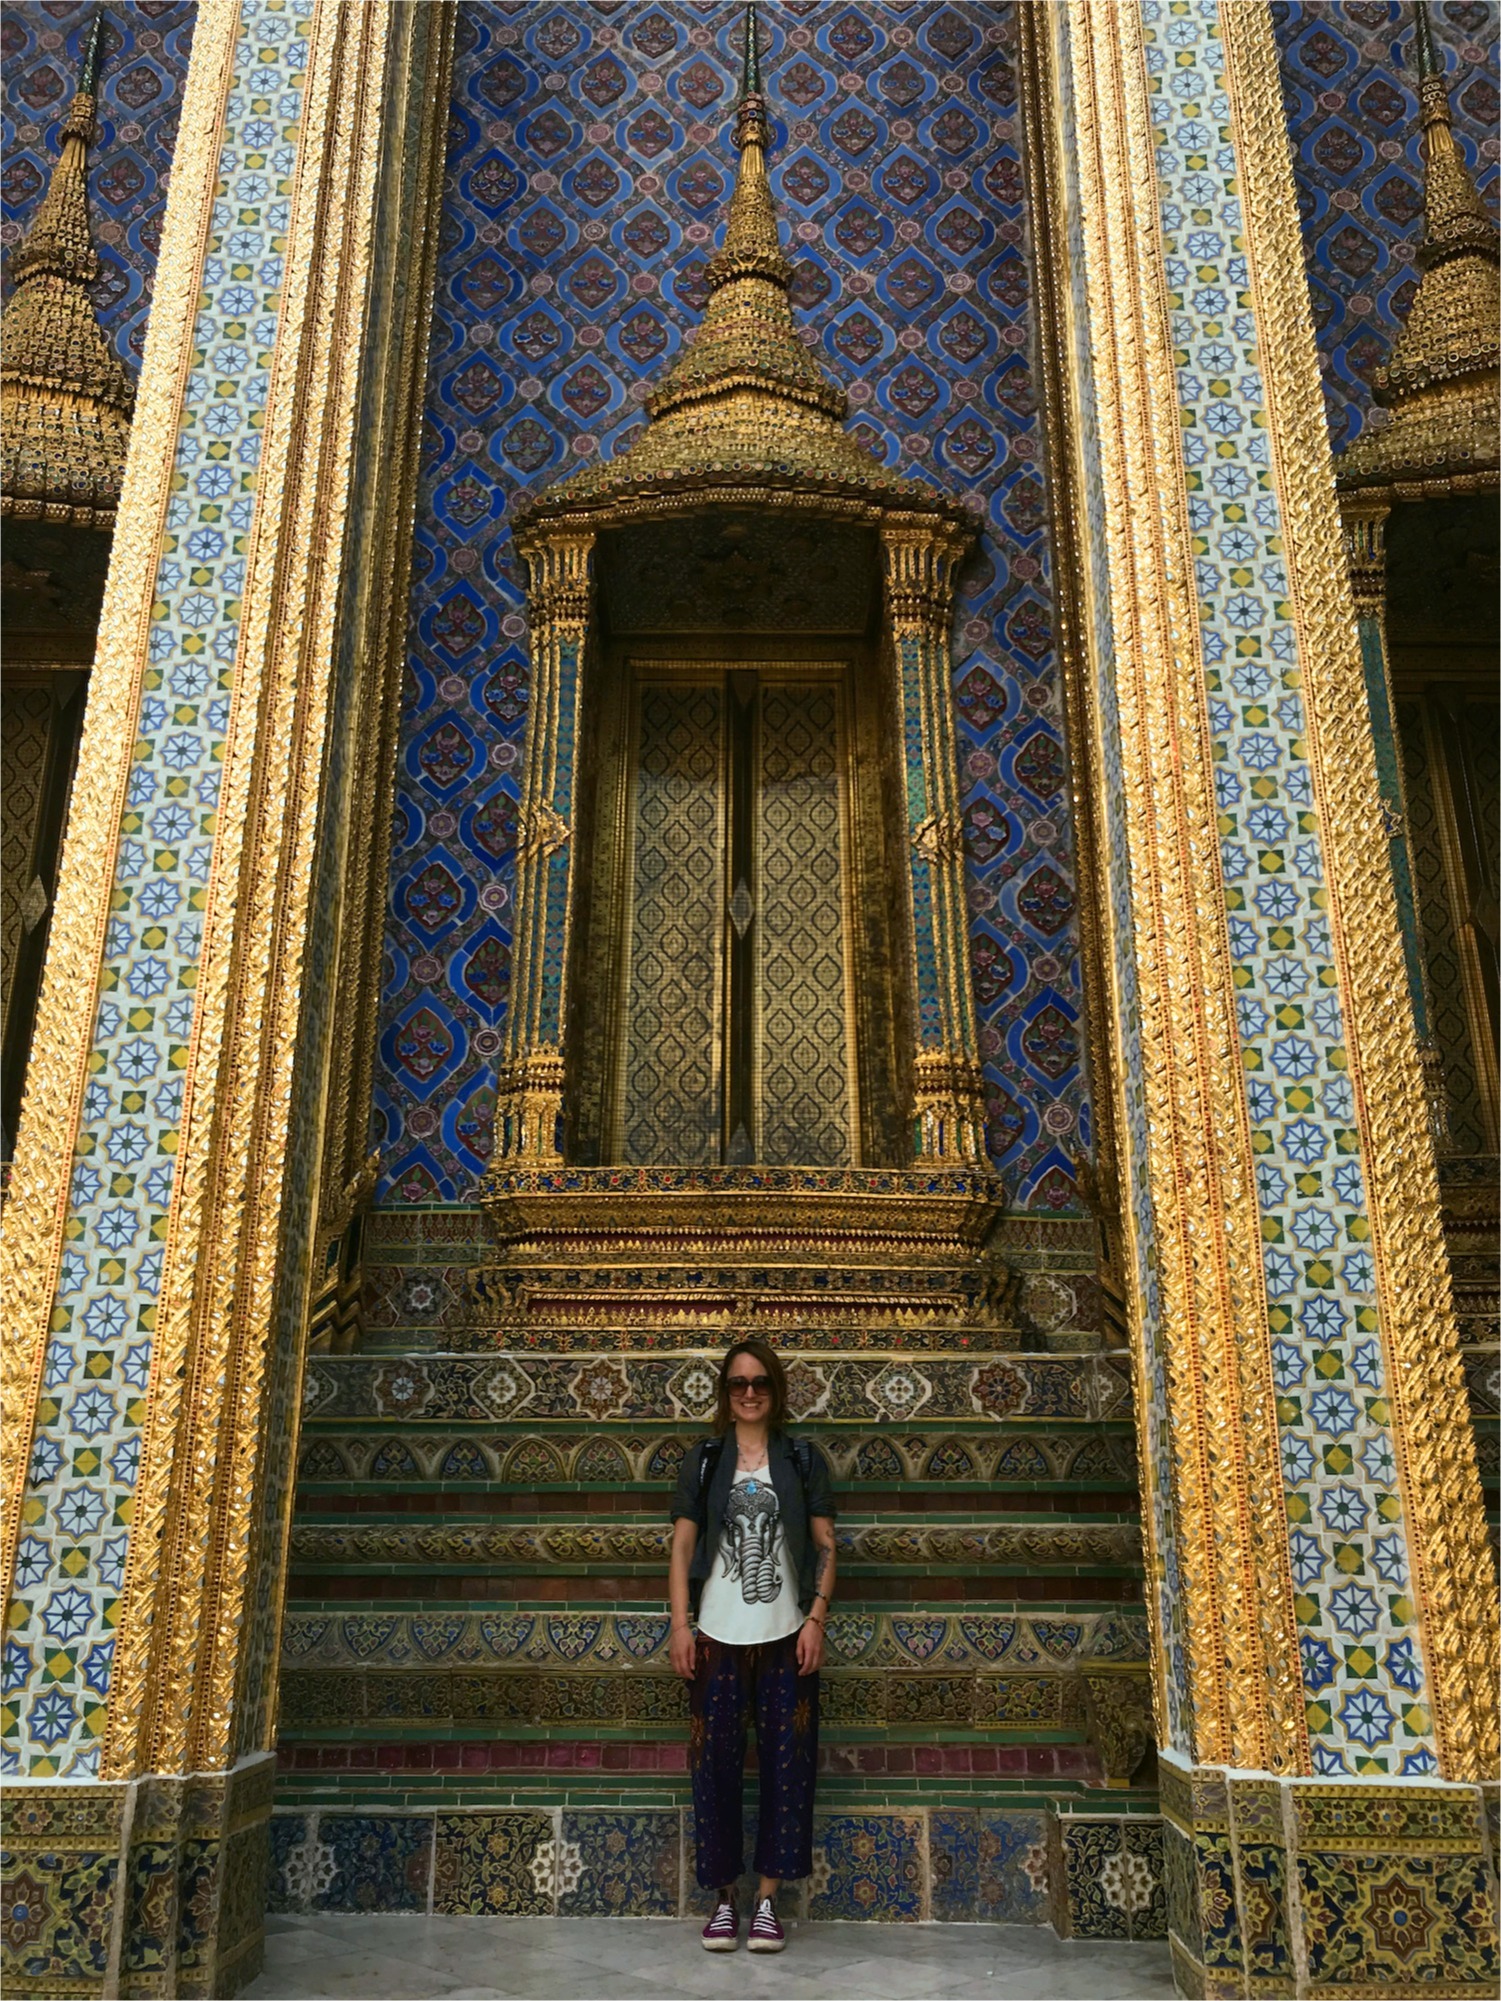 Königspalast in Bangkok